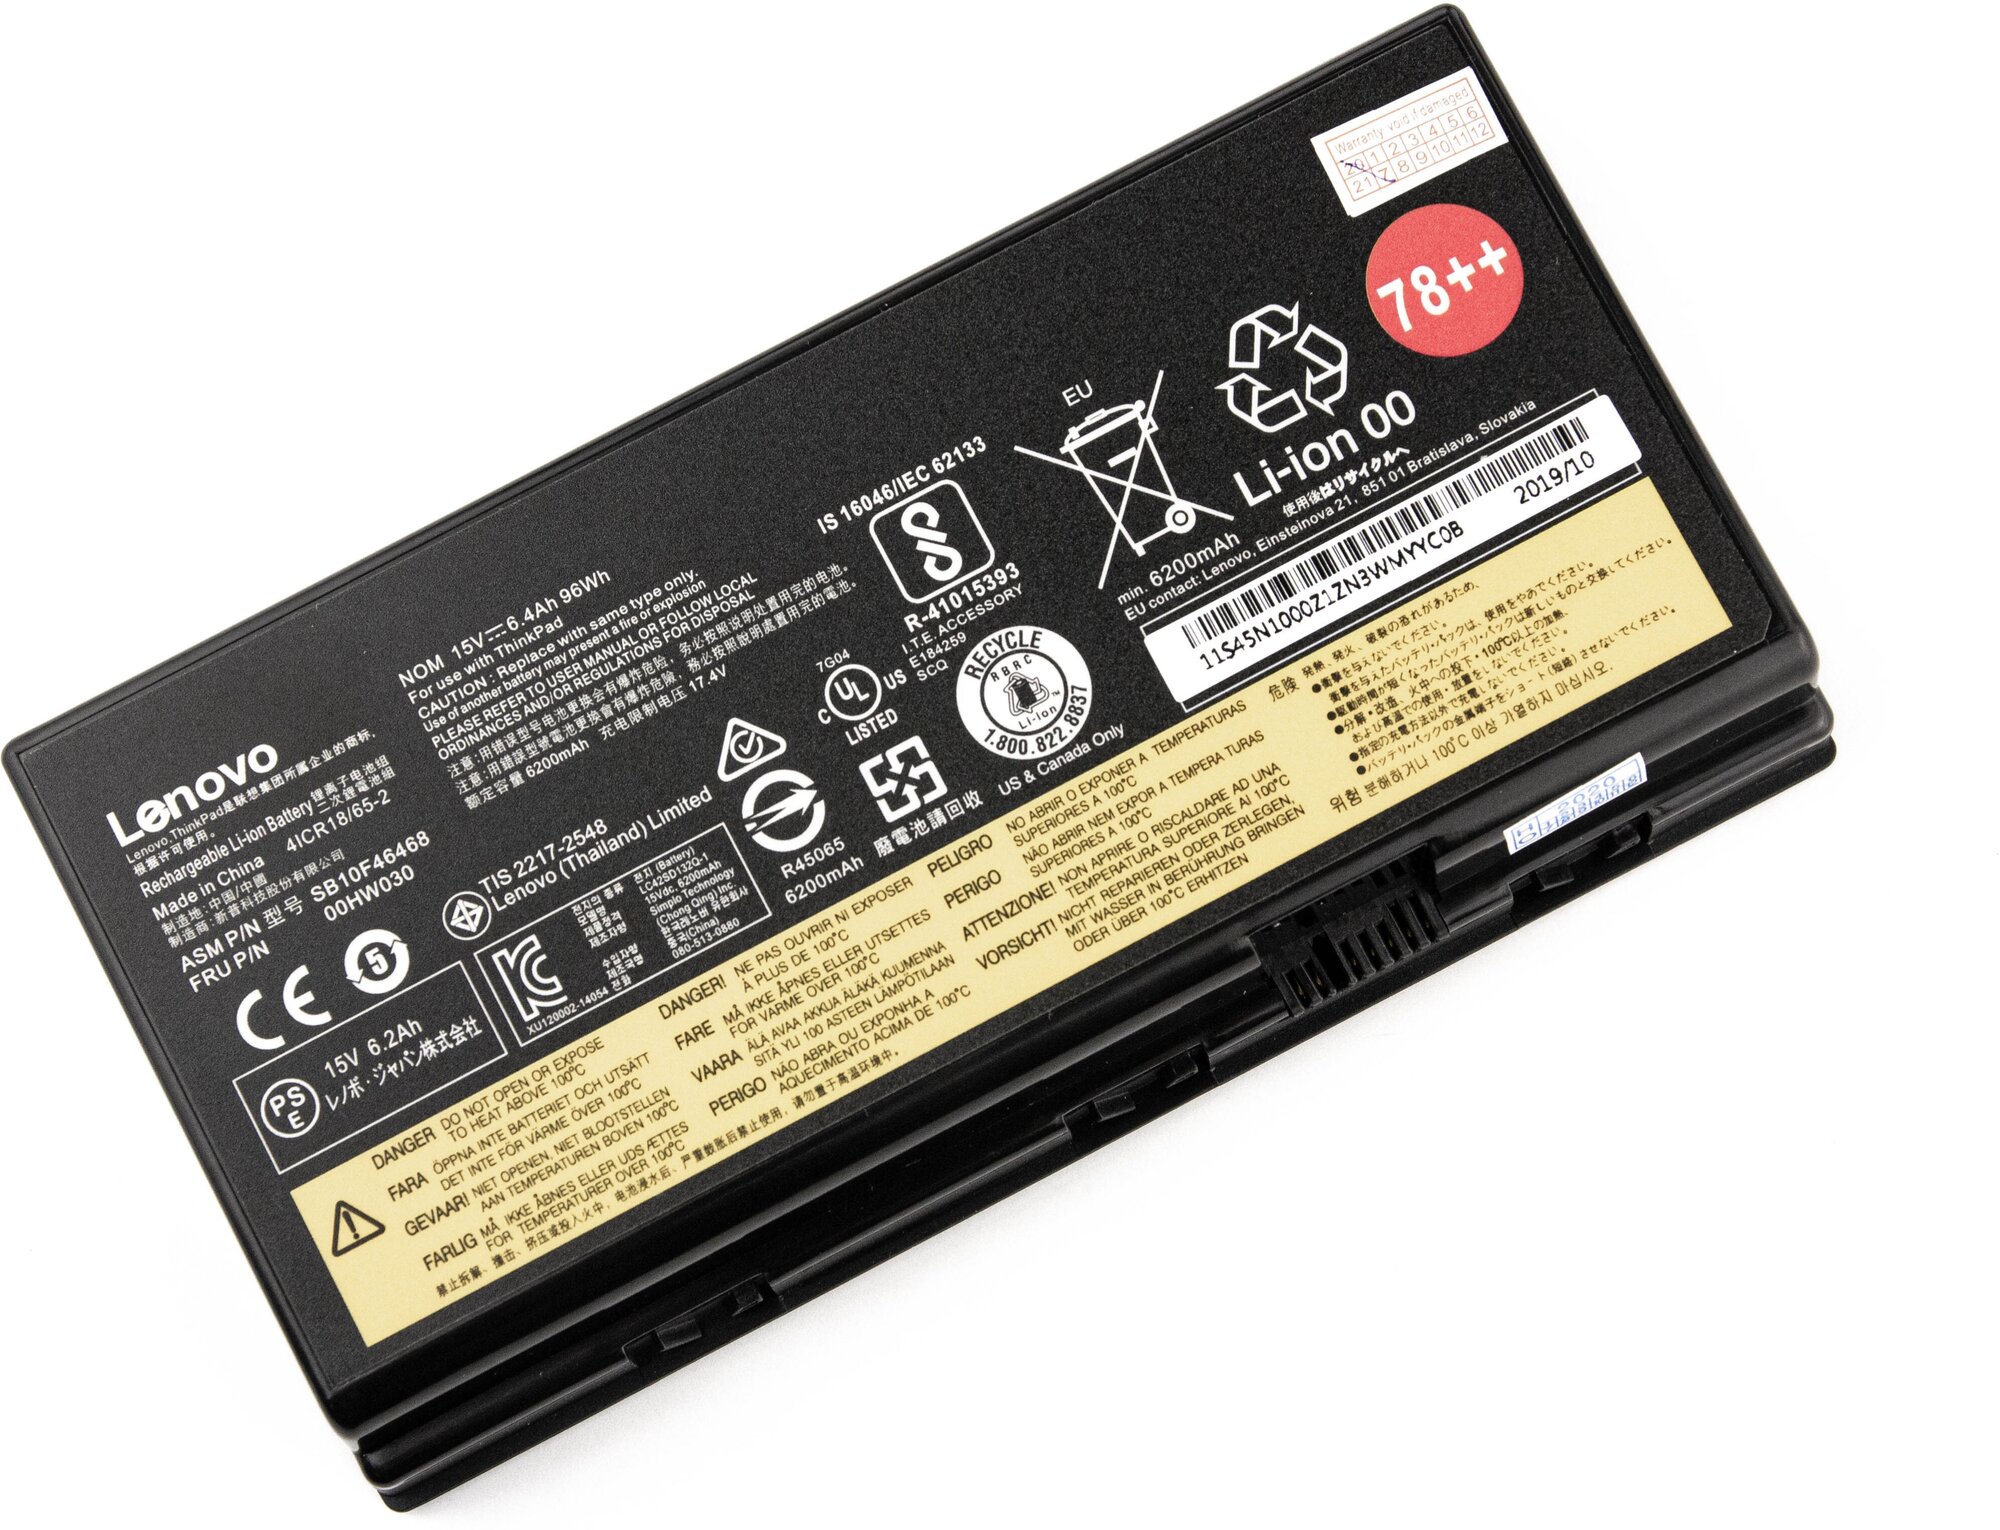 Аккумулятор для Lenovo ThinkPad P70 P71 (15V 6100mAh) 78++ ORG p/n: 01AV451 SB10F46468